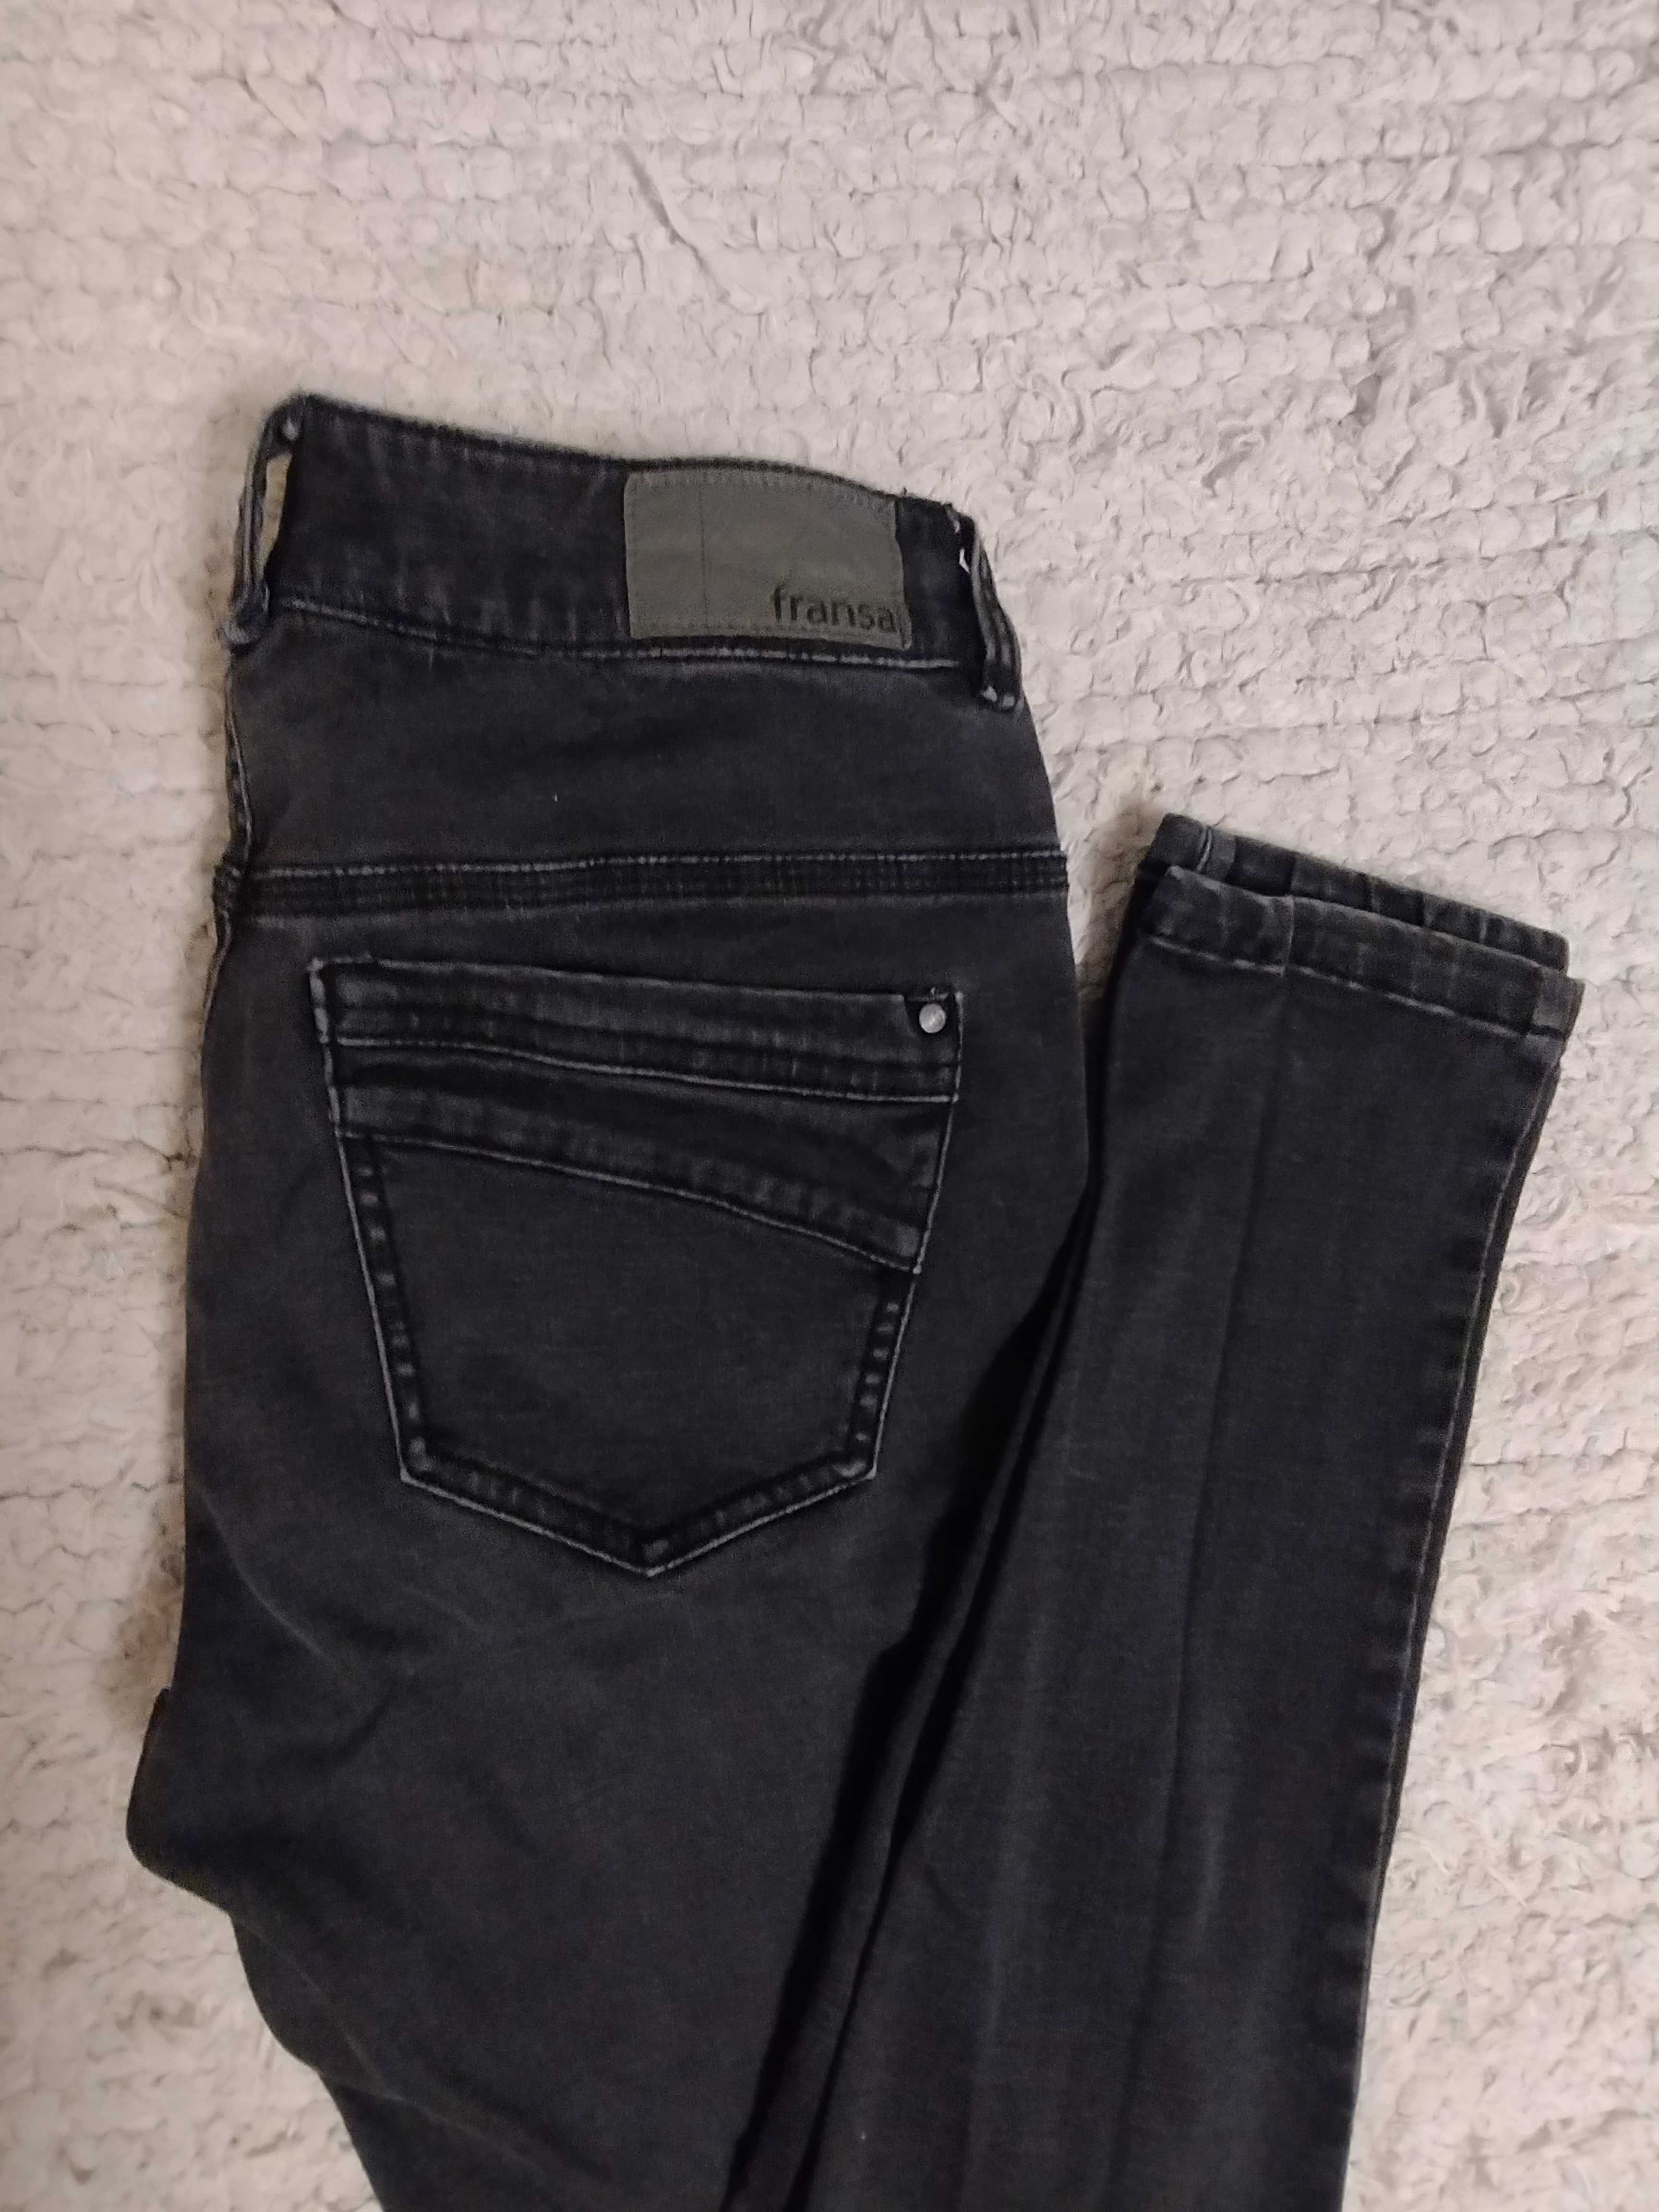 Spodnie jeans czarne rozmiar 38